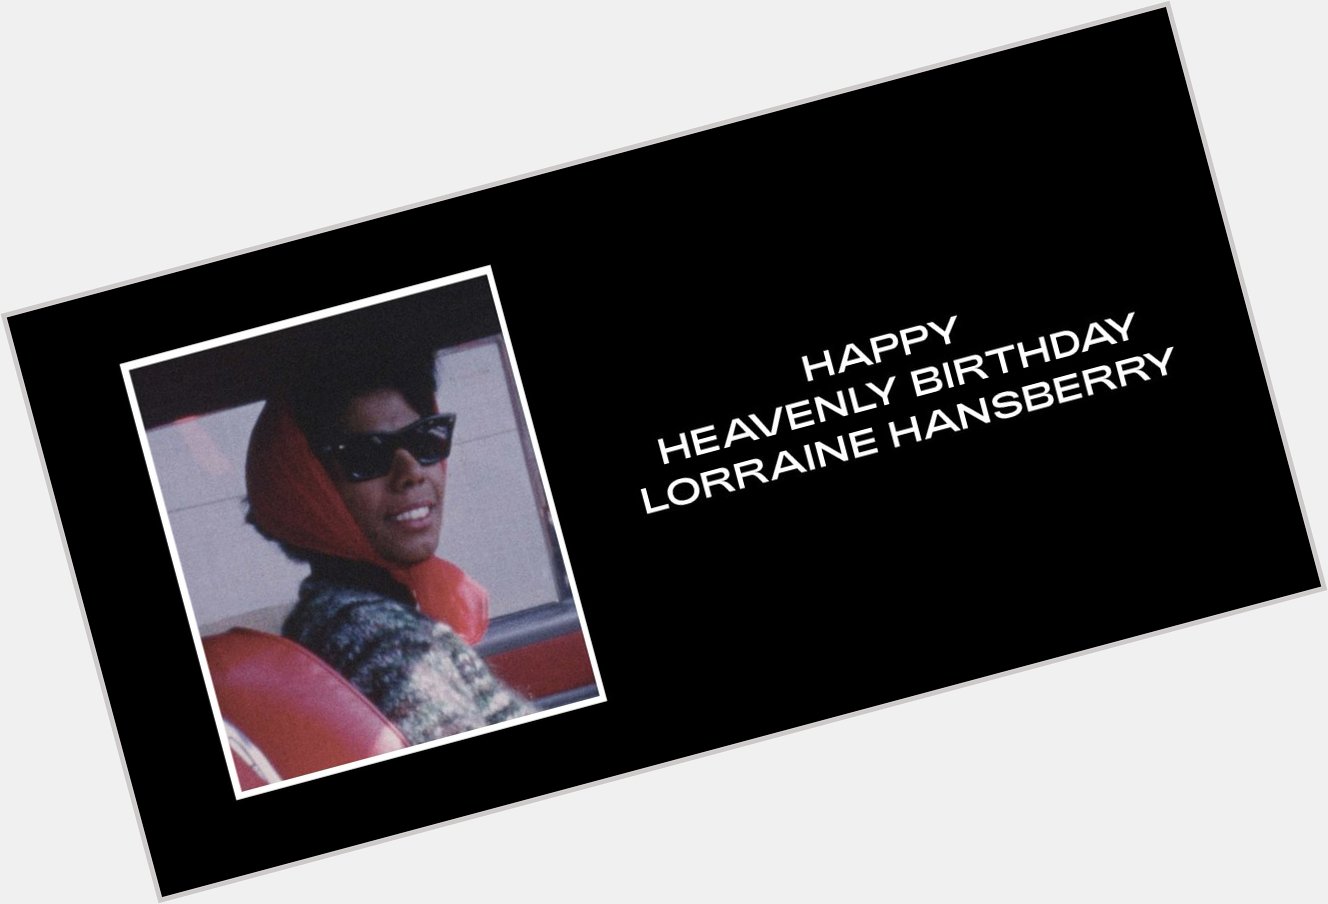 Happy Heavenly Birthday, Lorraine Hansberry. 